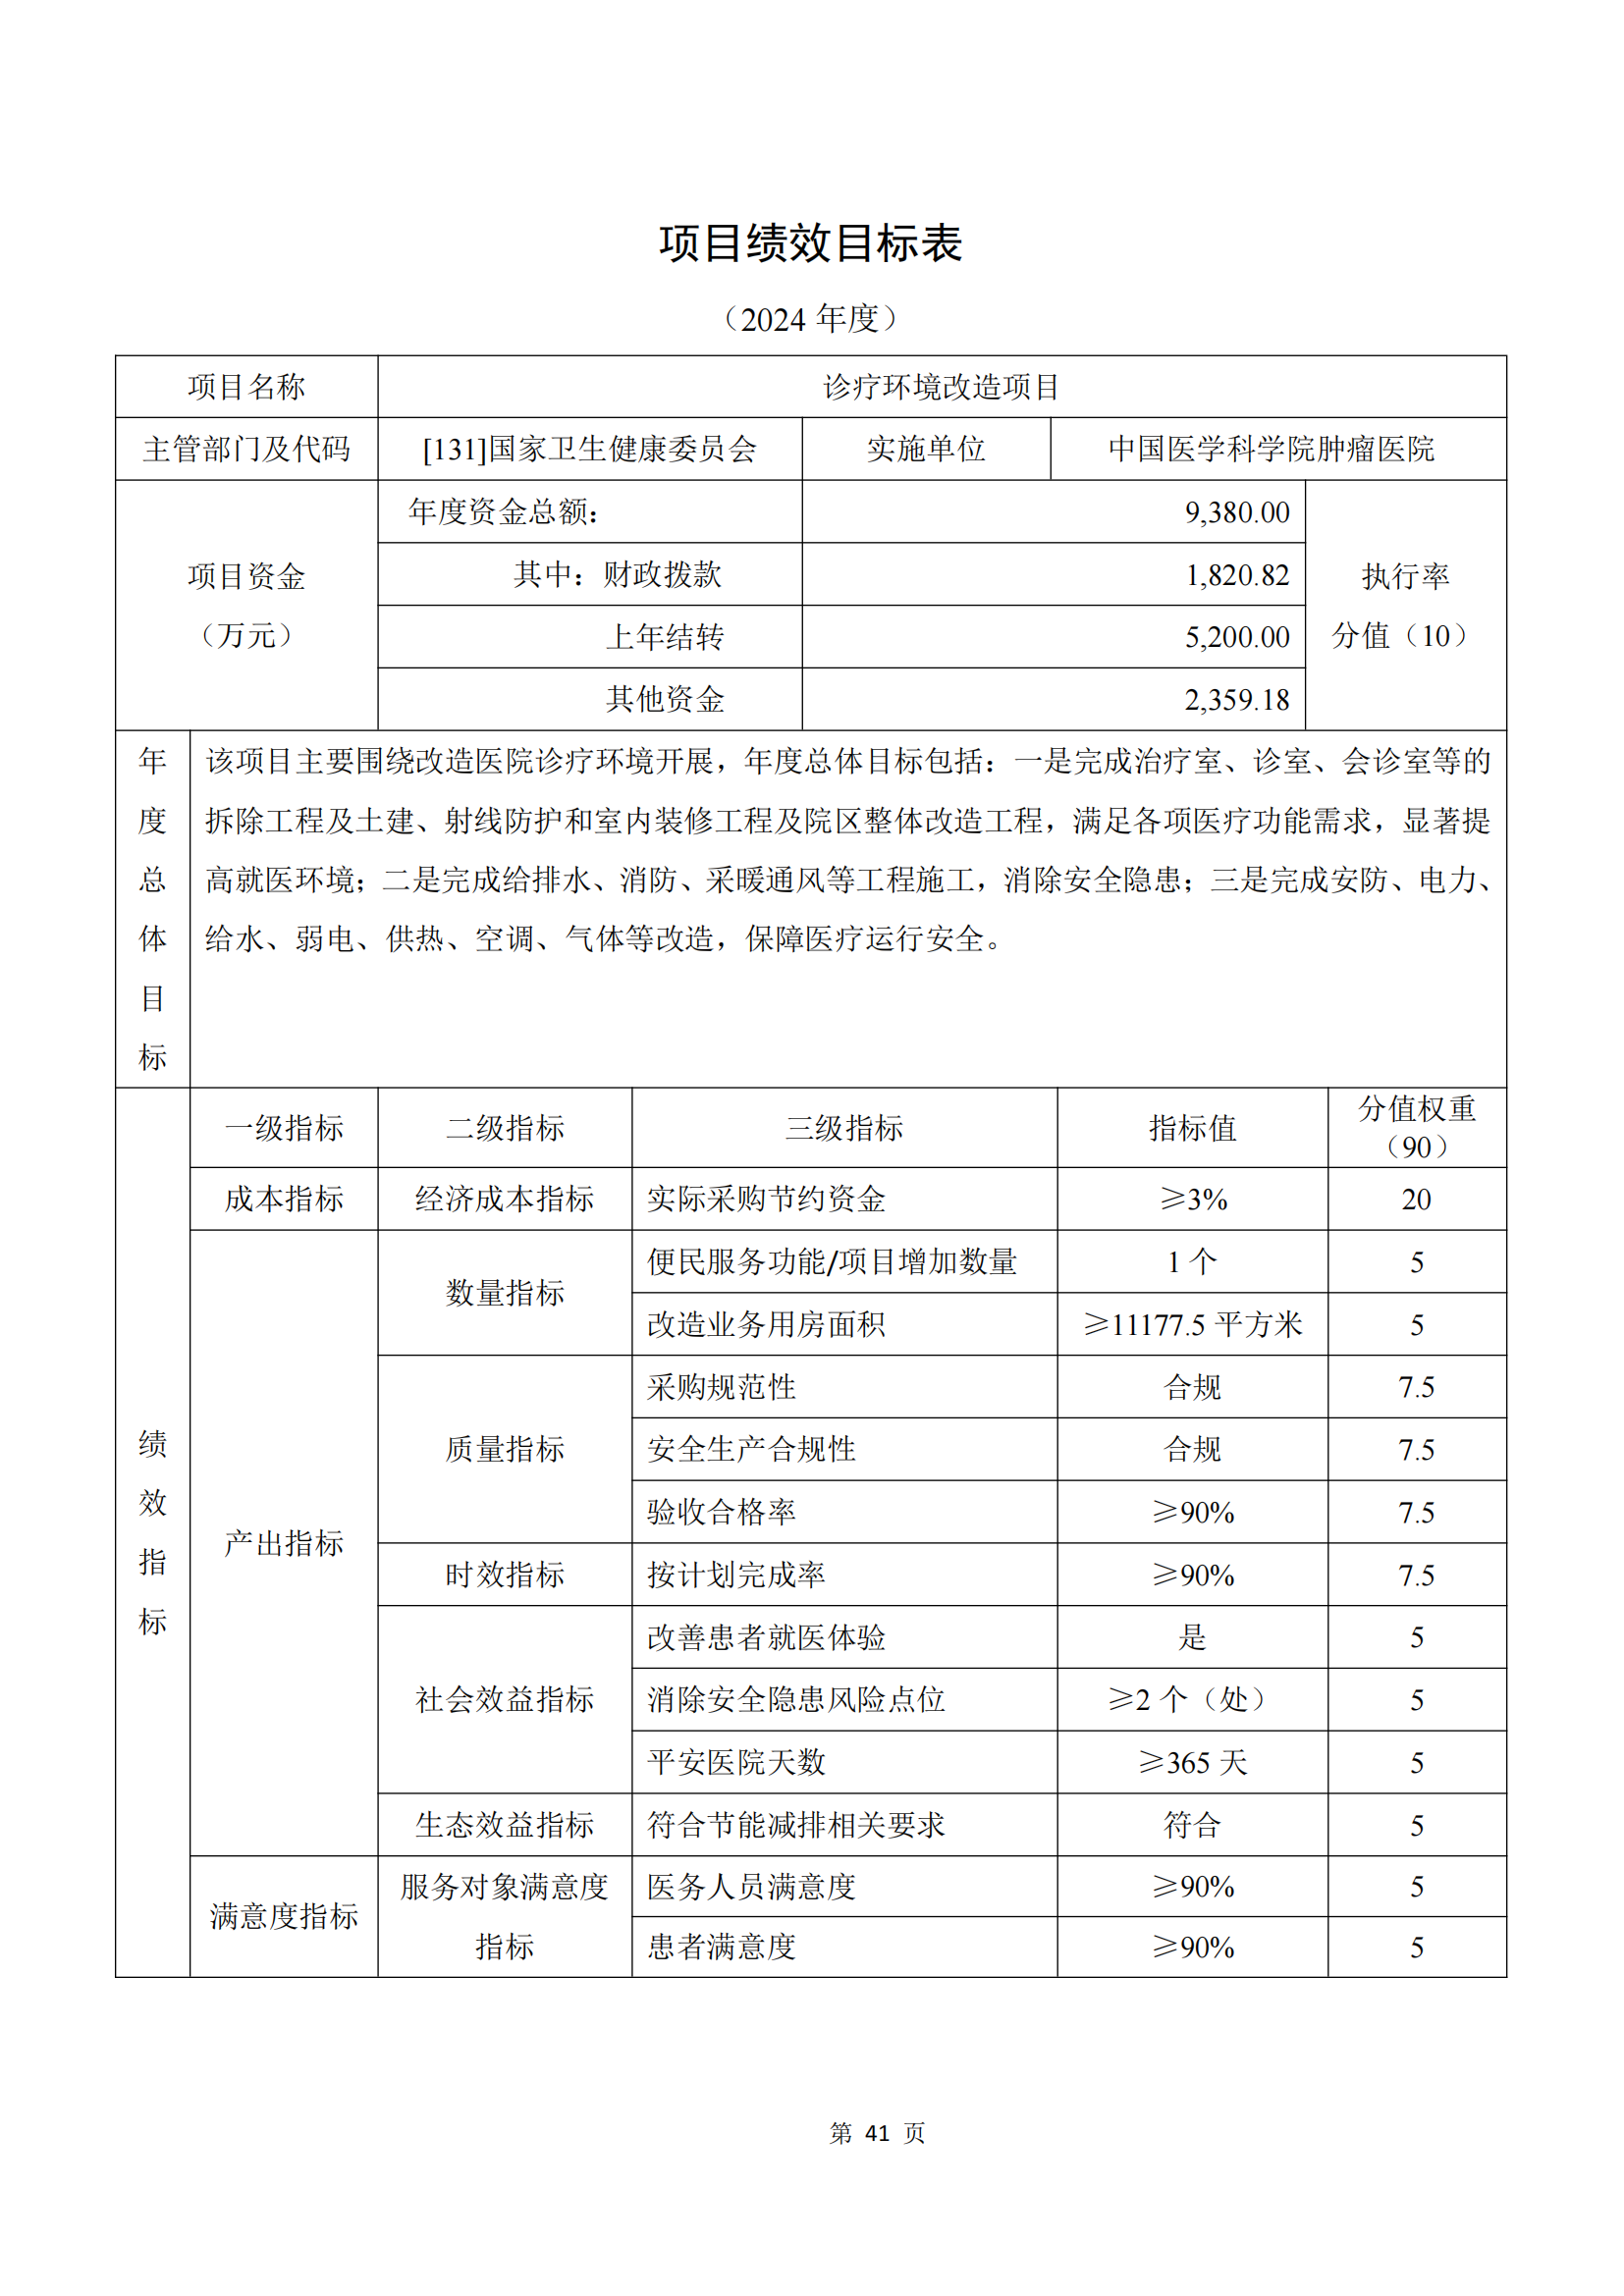 中国医学科学院2024年部门预算公开文本_42.png